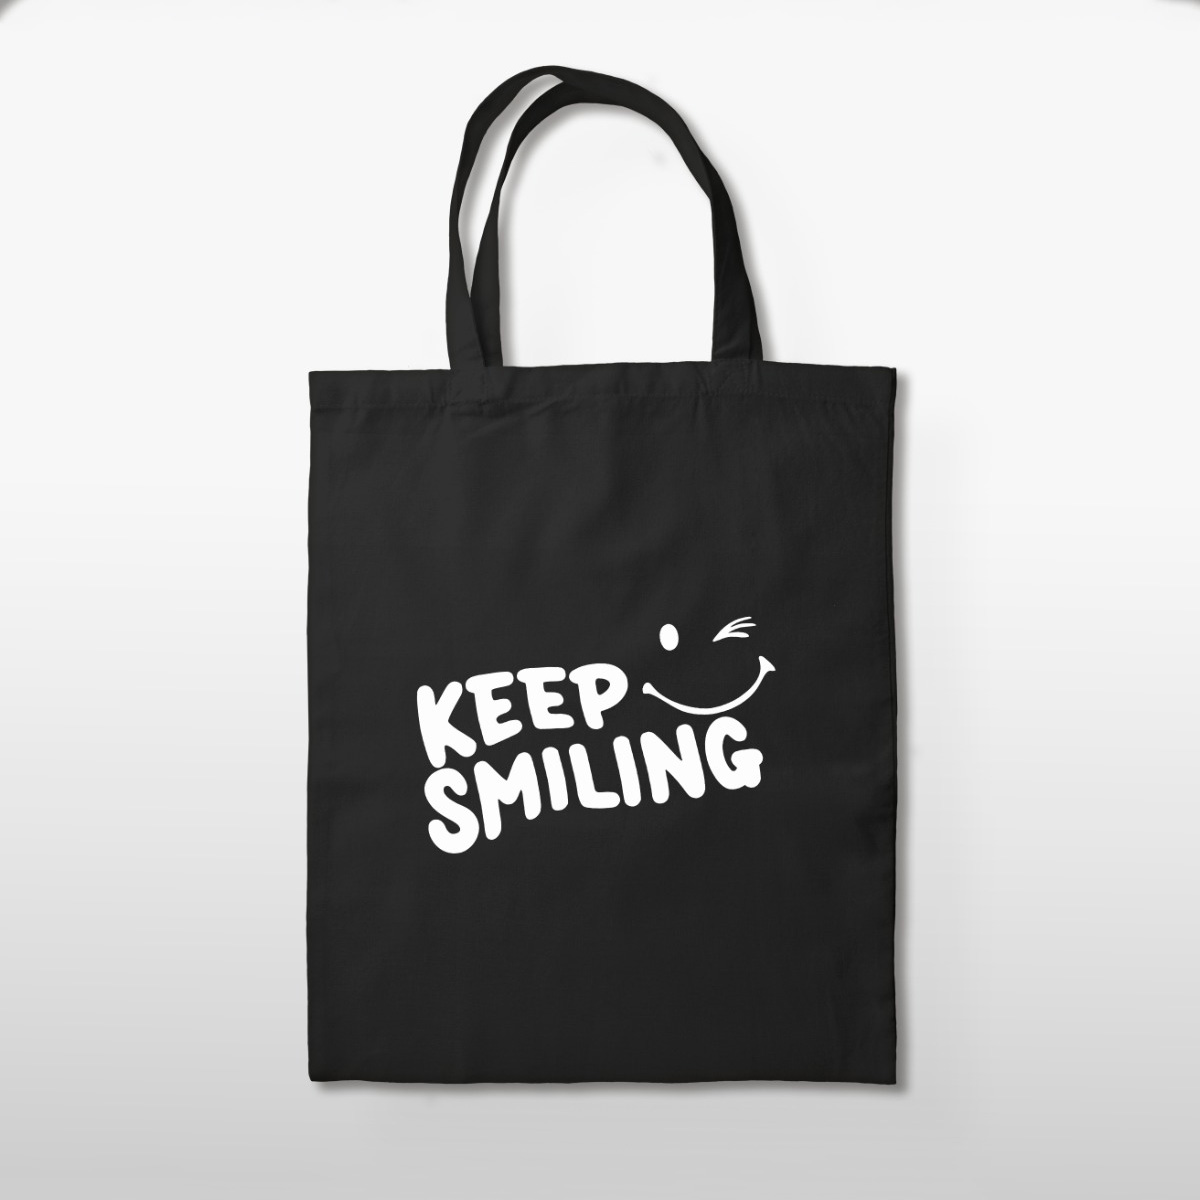 Keep smiling bag